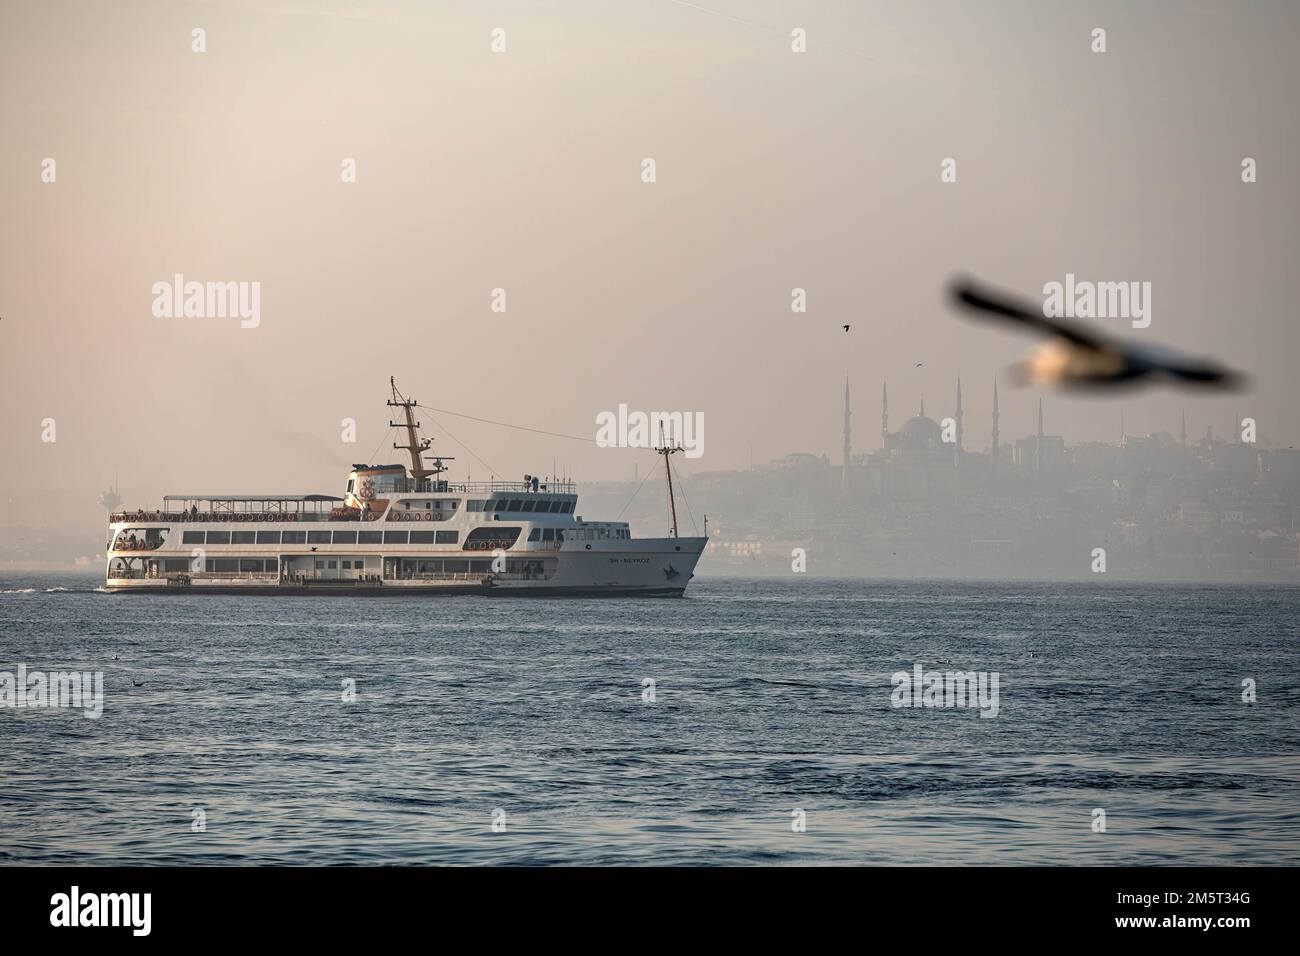 Les lignes de ferry de la ville et la Mosquée bleue en arrière-plan ont créé une belle image avec un mouette volant. Bien que le temps ait été exceptionnellement chaud à Istanbul, les gens se sont amusés autour de la jetée de Kadikoy. Banque D'Images